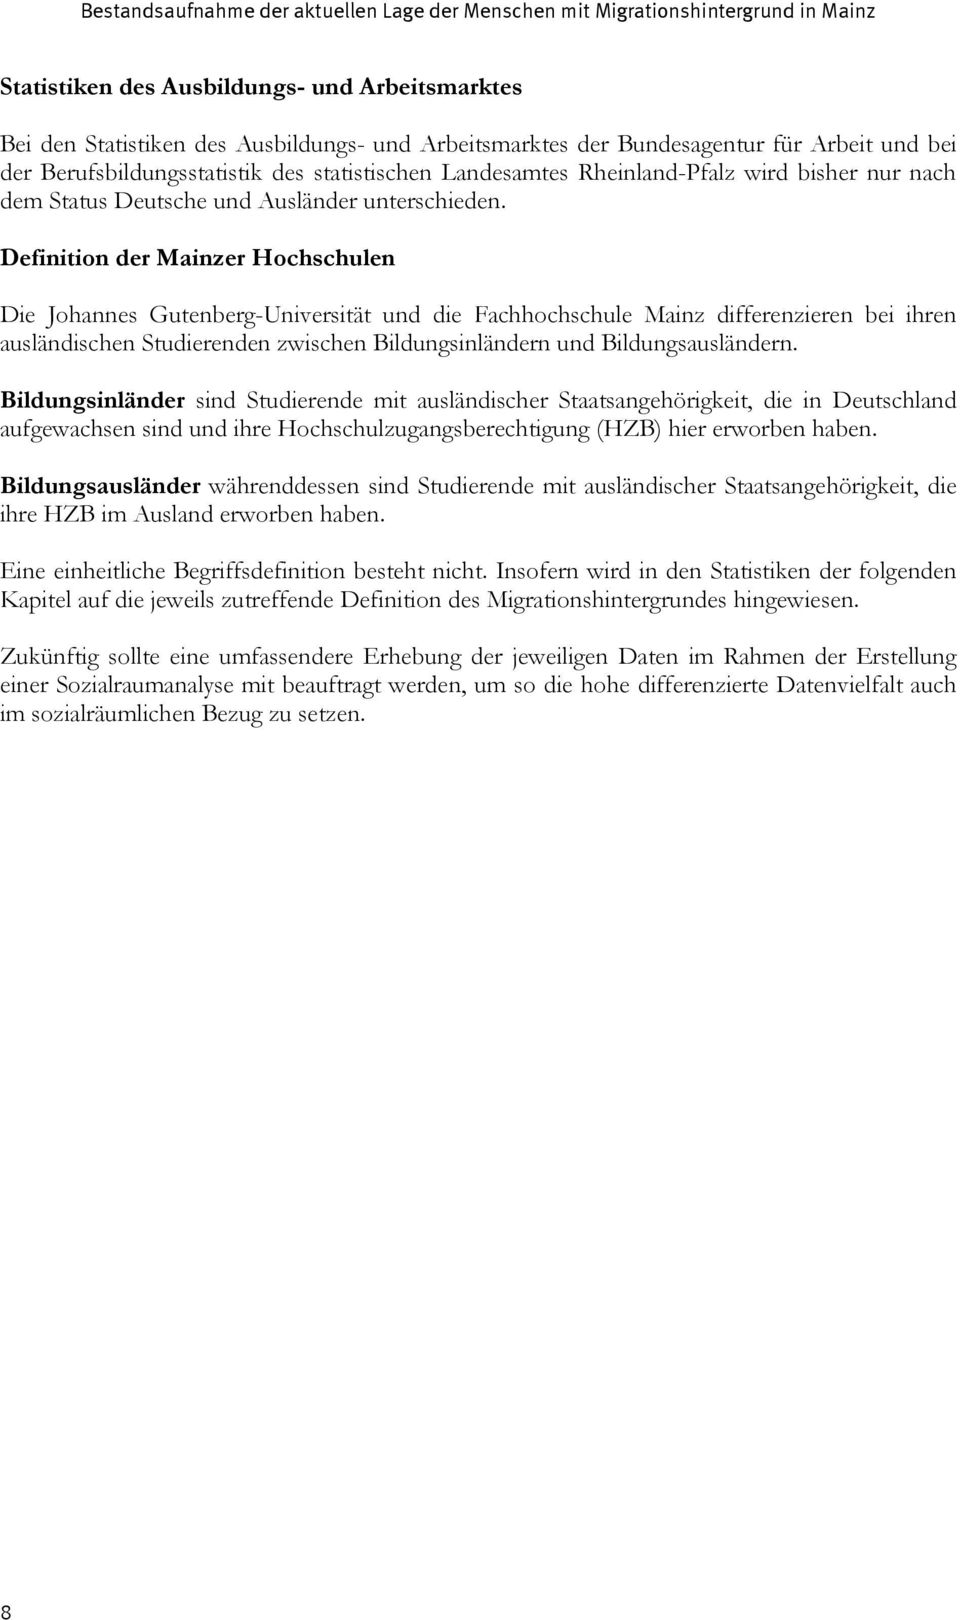 Definition der Mainzer Hochschulen Die Johannes Gutenberg-Universität und die Fachhochschule Mainz differenzieren bei ihren ausländischen Studierenden zwischen Bildungsinländern und